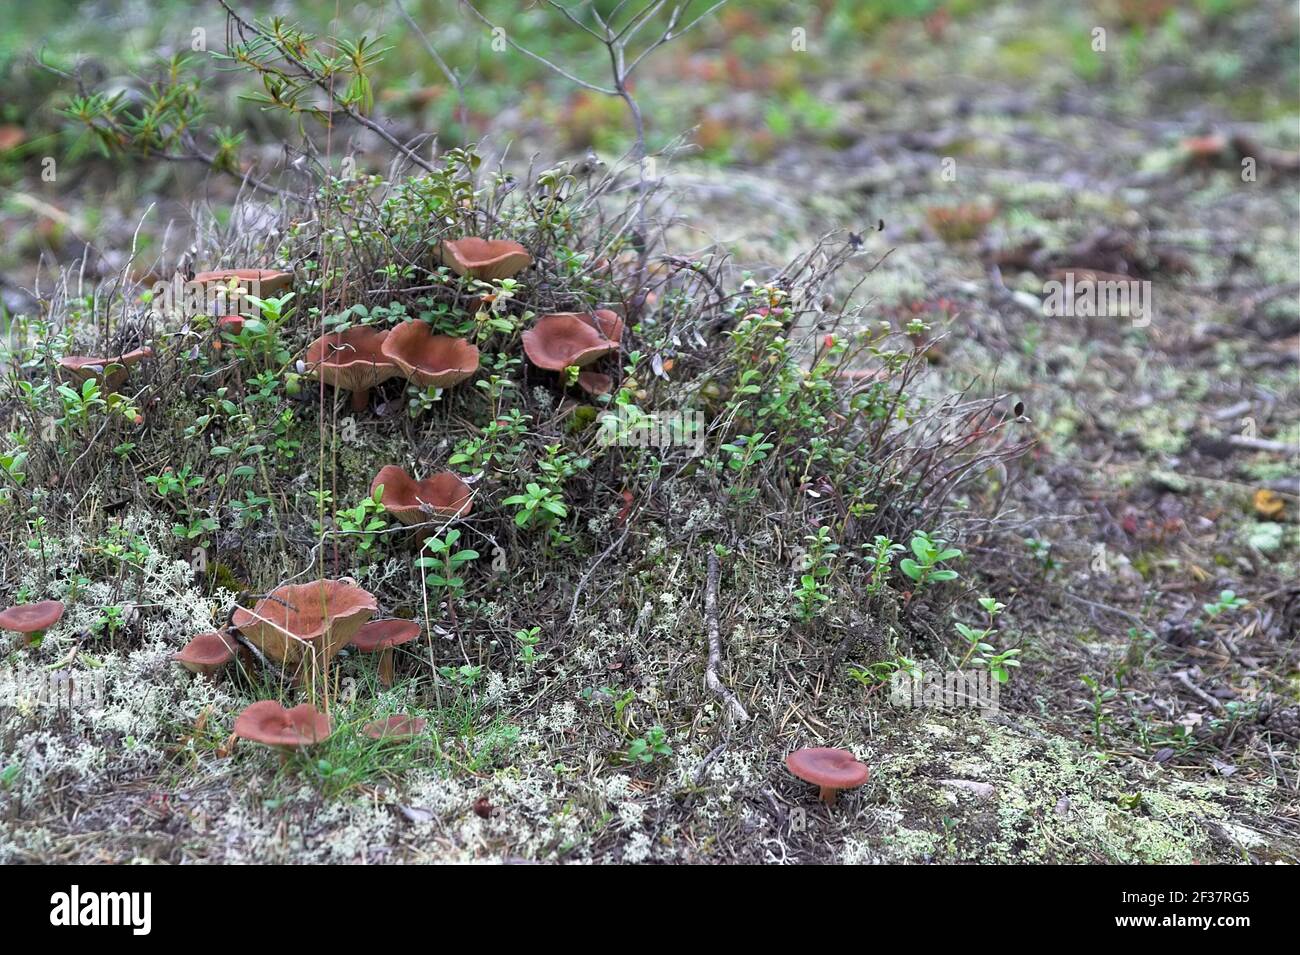 Finland, Finnland; Small brown mushrooms in a clump of moss. Kleine braune Pilze in einem Moosklumpen. Pequeños hongos marrones en un grupo de musgo. Stock Photo